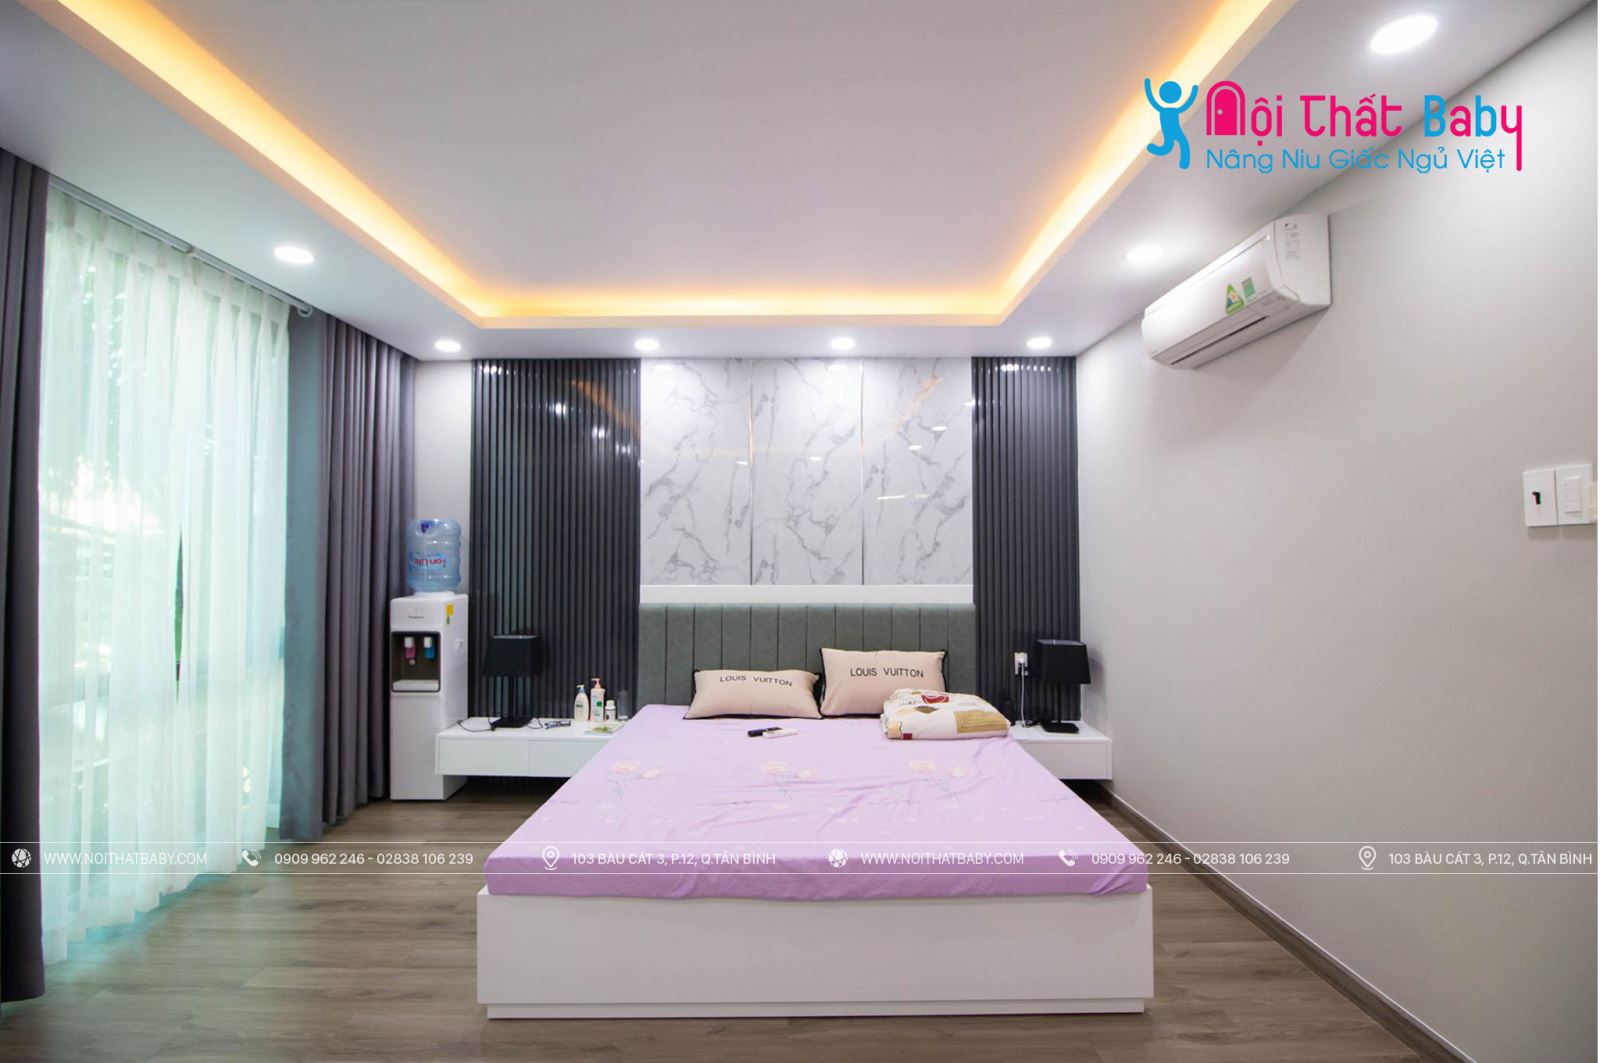 Hình ảnh công trình thực tế nội thất nguyên căn nhà chị Oanh Quận Tân Bình